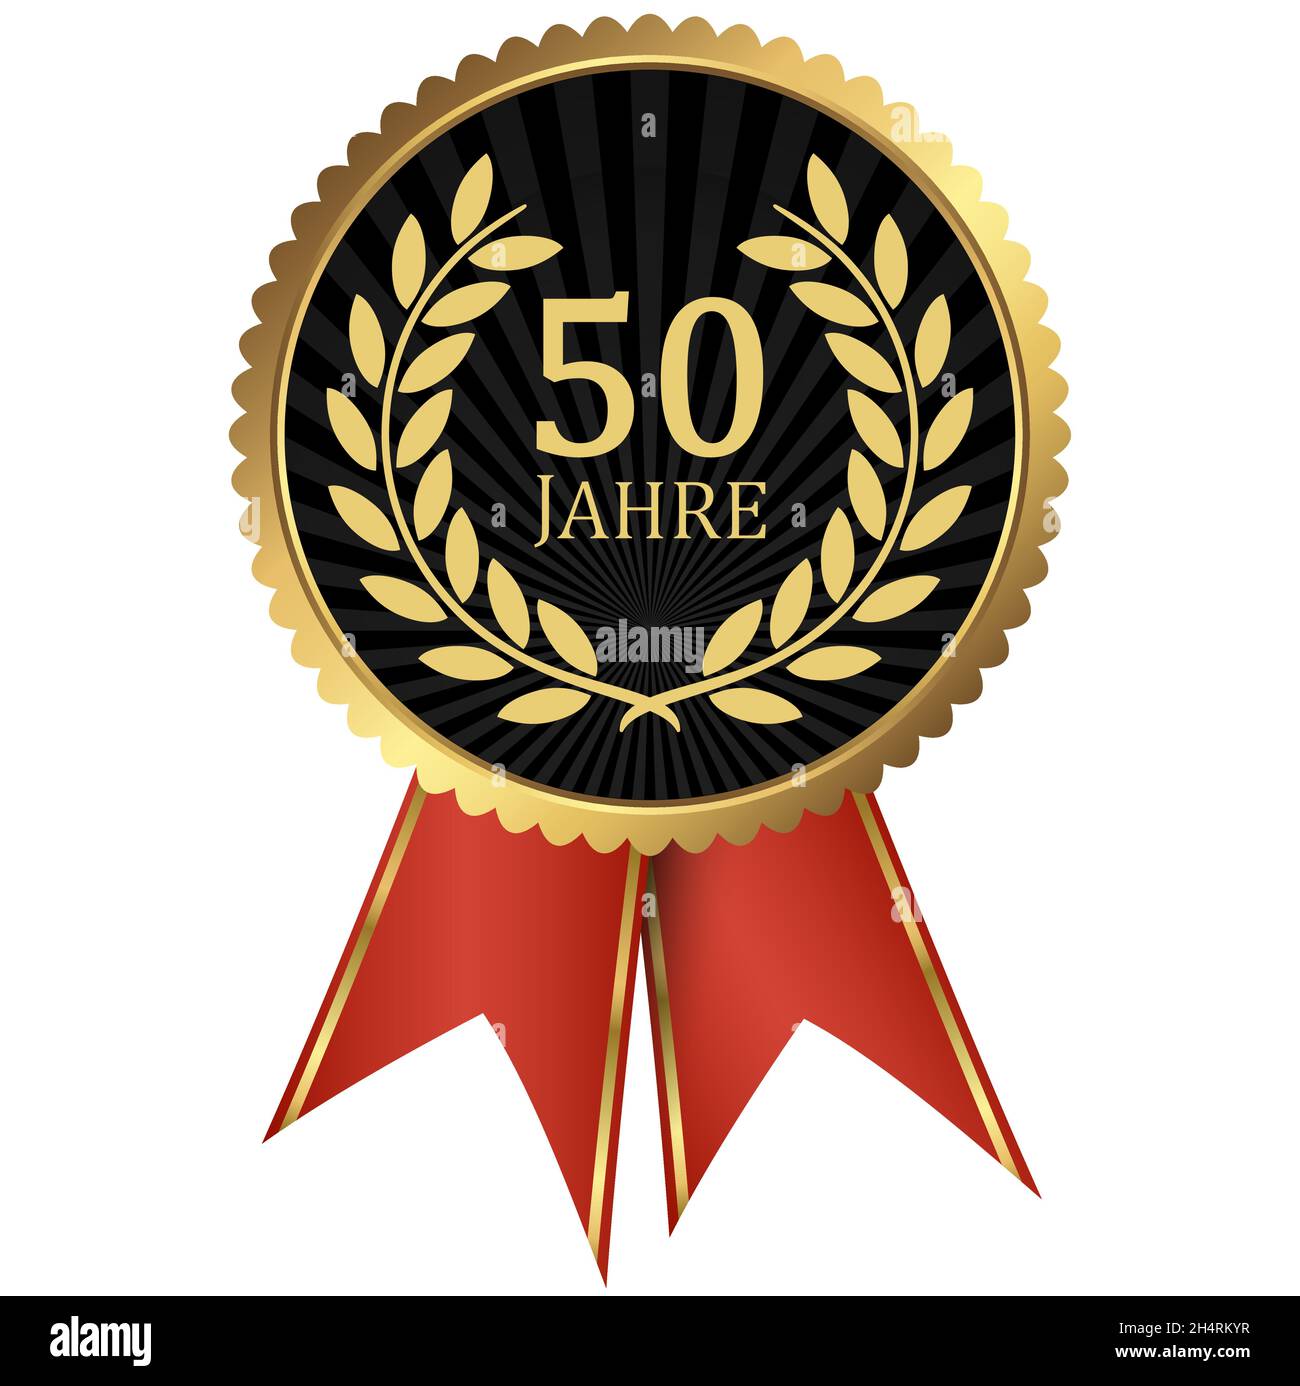 fichier vectoriel eps avec médaillon d'or avec couronne de laurier pour le succès ou jubilé ferme et texte 50 ans (texte allemand) Illustration de Vecteur